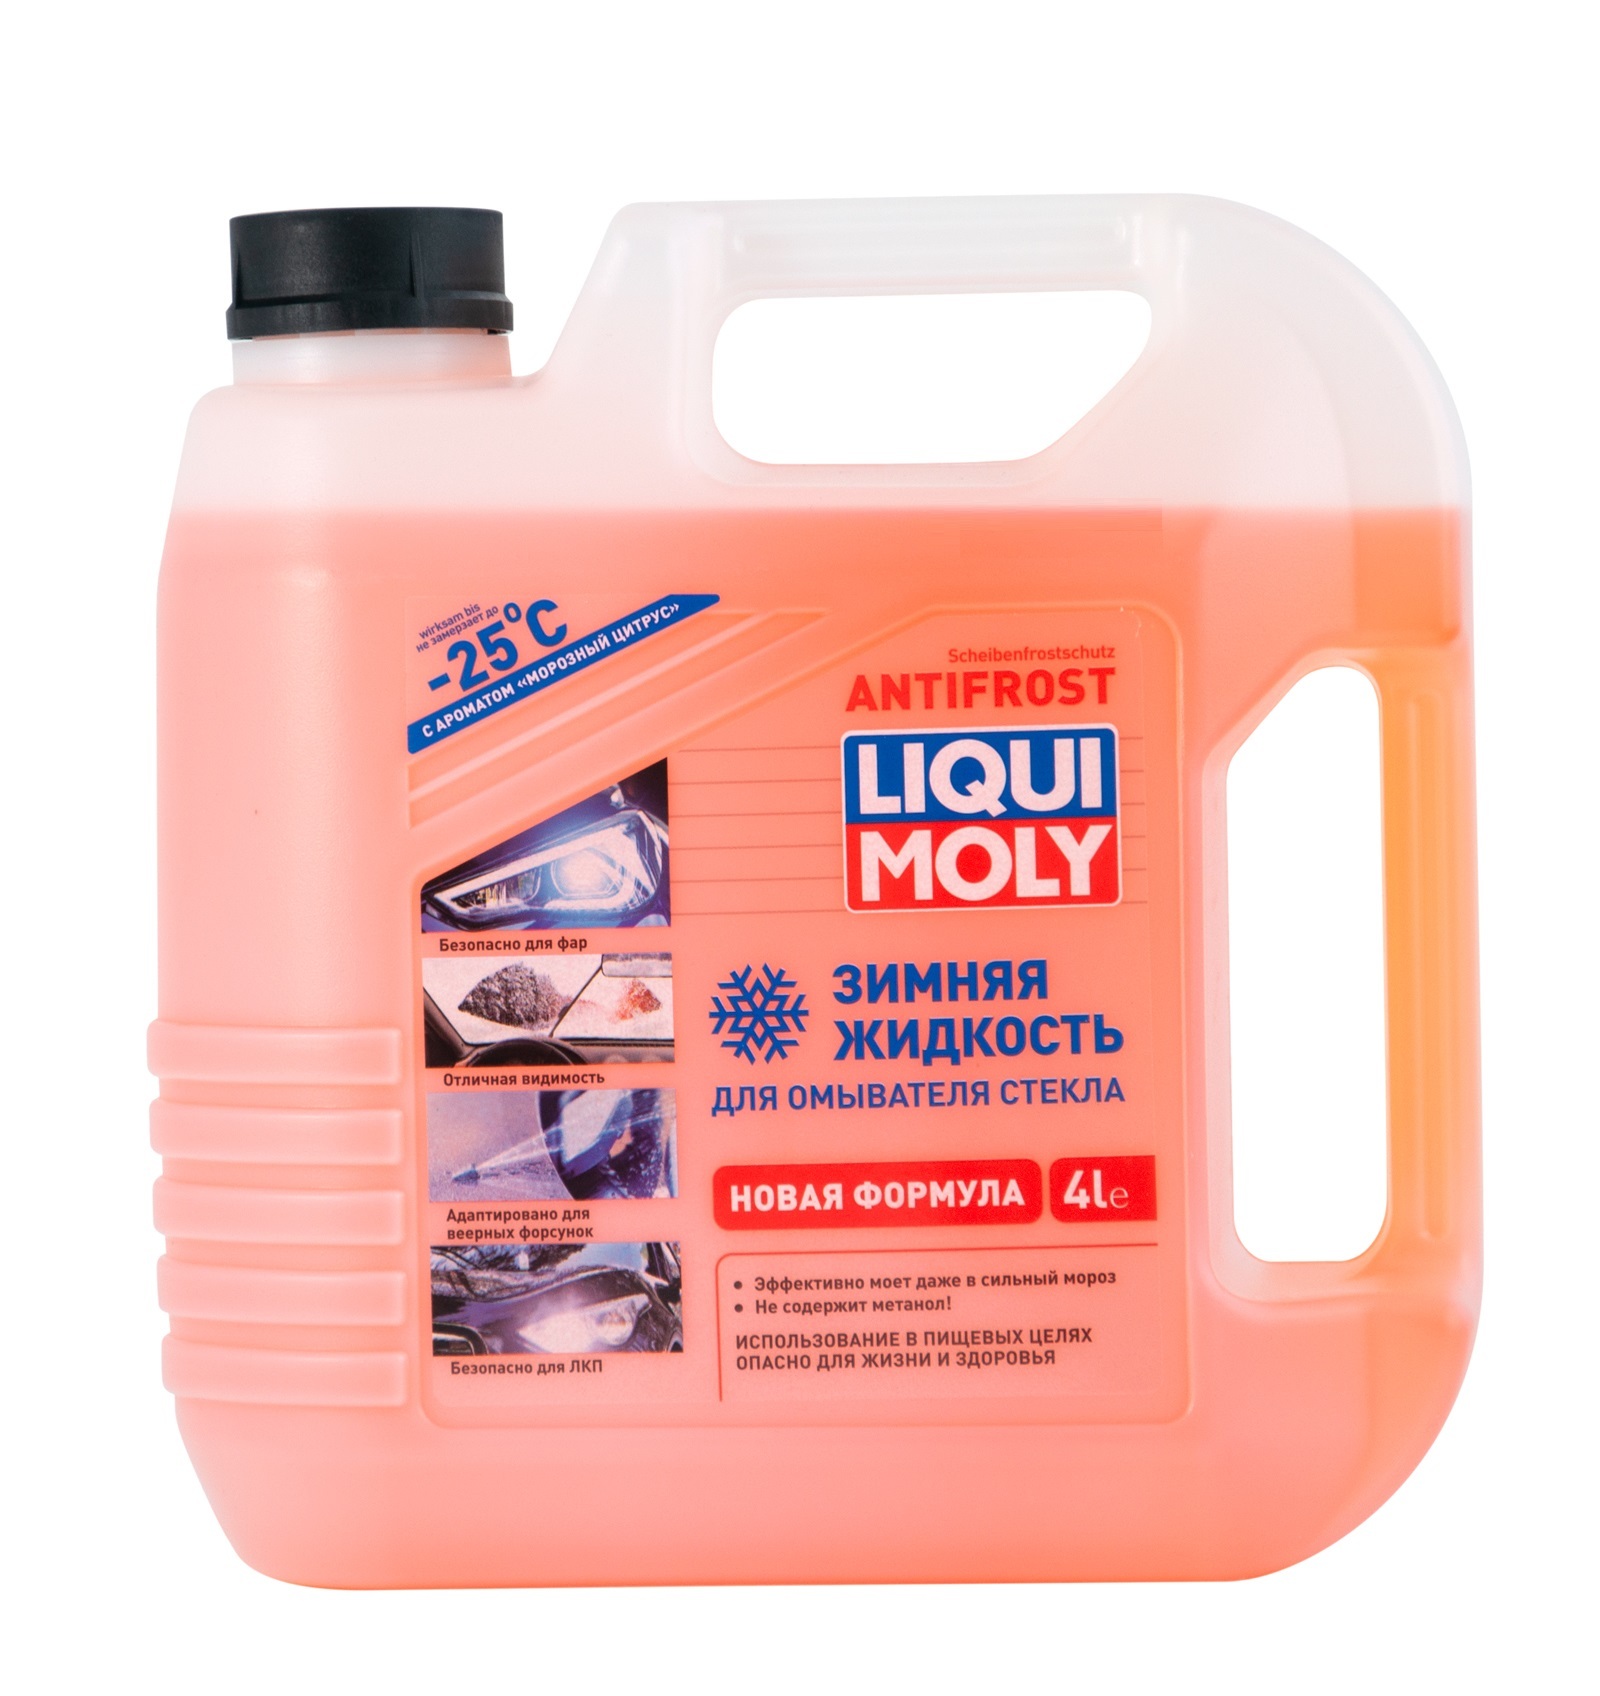 Незамерзающая жидкость для стекла Liqui Moly Antifrost Scheiben-Frostchutz -25С (Грейпфрут-мята) 4л